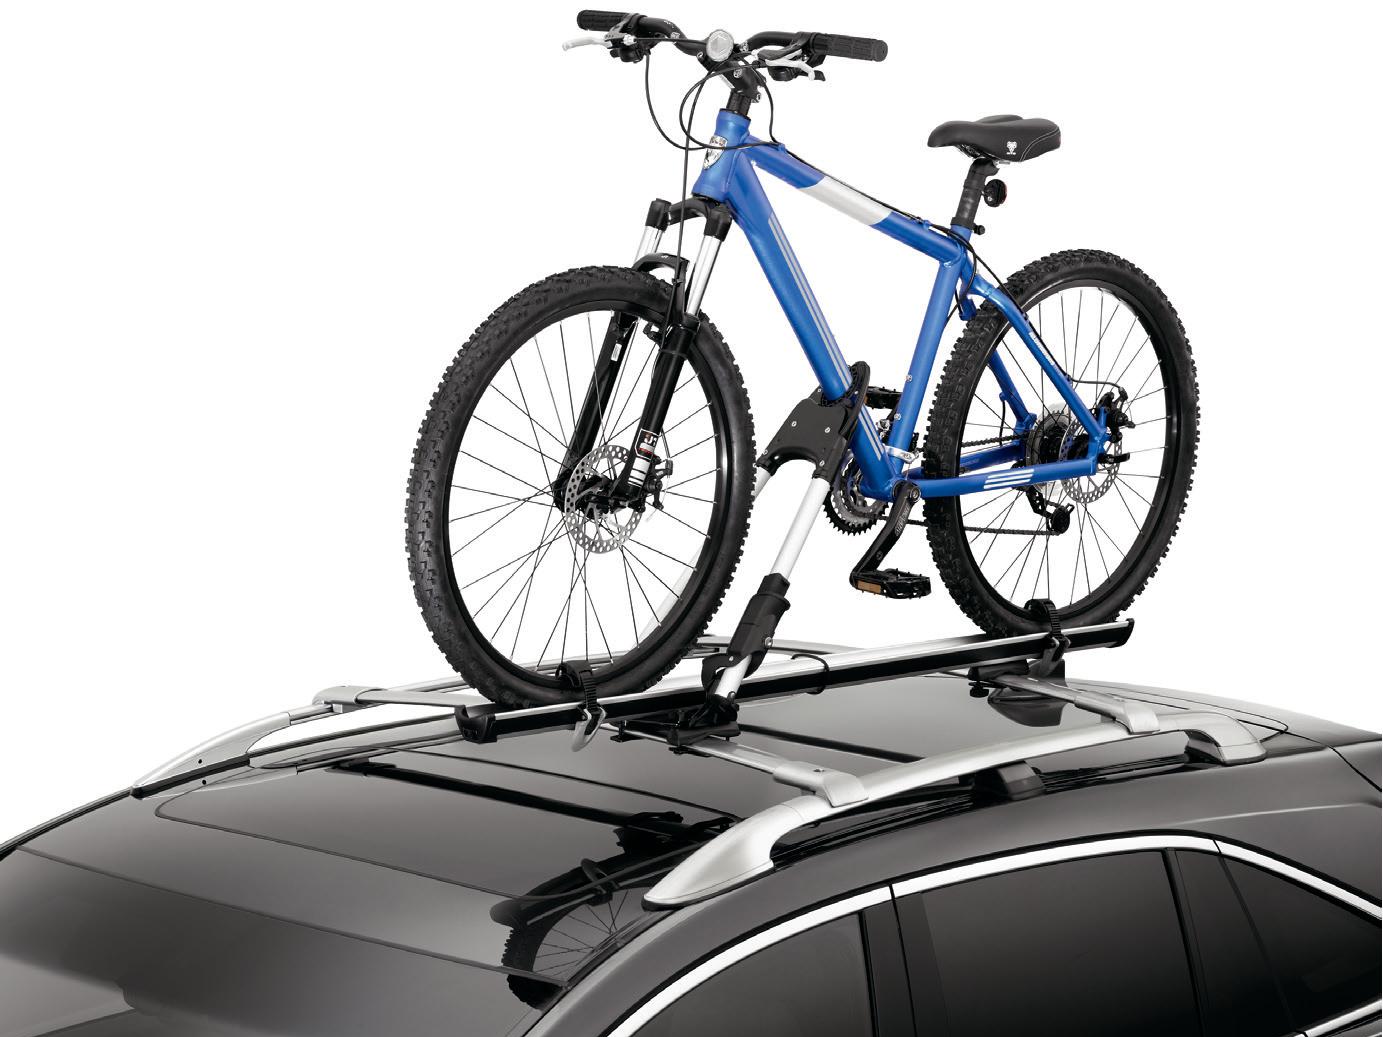 2016 Acura RDX Bike Attachment - Roof 08L07-E09-200